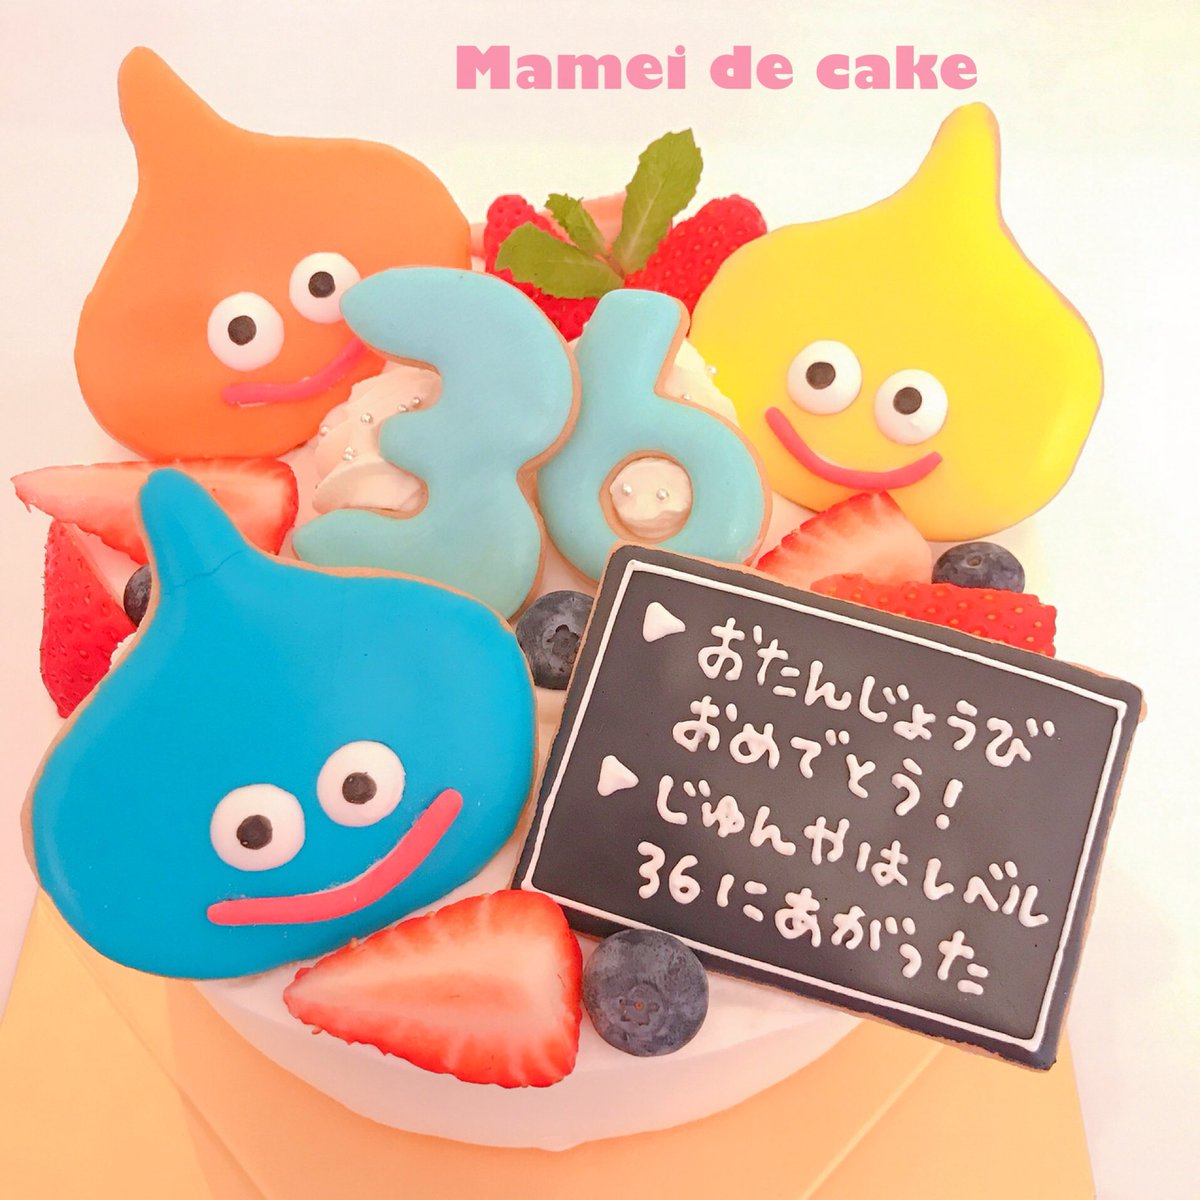 Mamei De Cake マーメイドケーキ ドラクエのおもしろオーダー ケーキ オーダーケーキ オリジナル ケーキ ドラクエ ドラゴンクエスト スライム ゲーム 誕生日ケーキ レベルがあがった スイーツ カフェ Cake Game Dragonquest Sweets Cafe